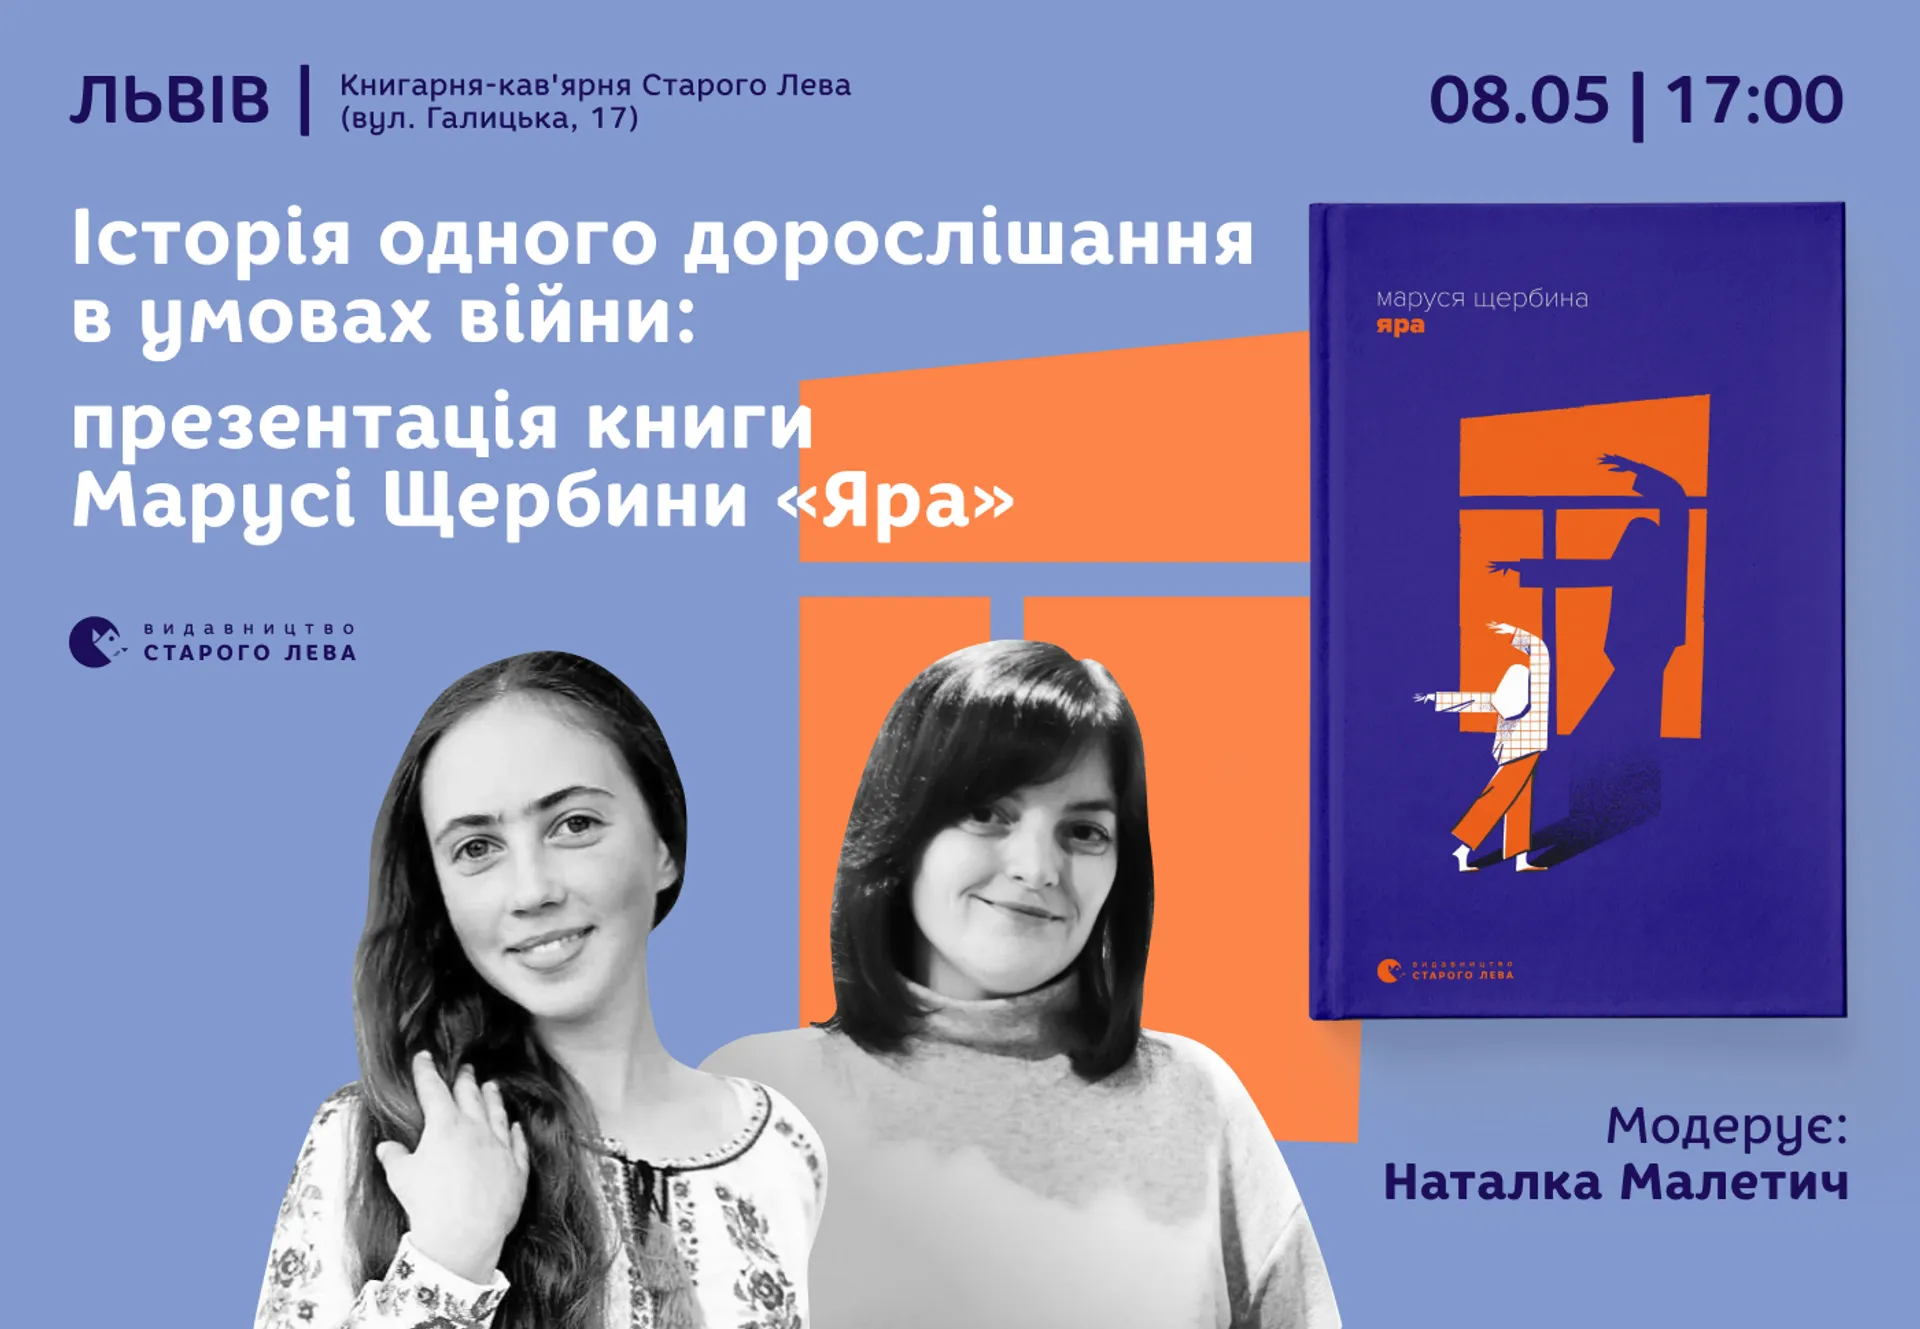 Історія одного дорослішання умовах війни: презентація книги Марусі Щербини «Яра» у Львові